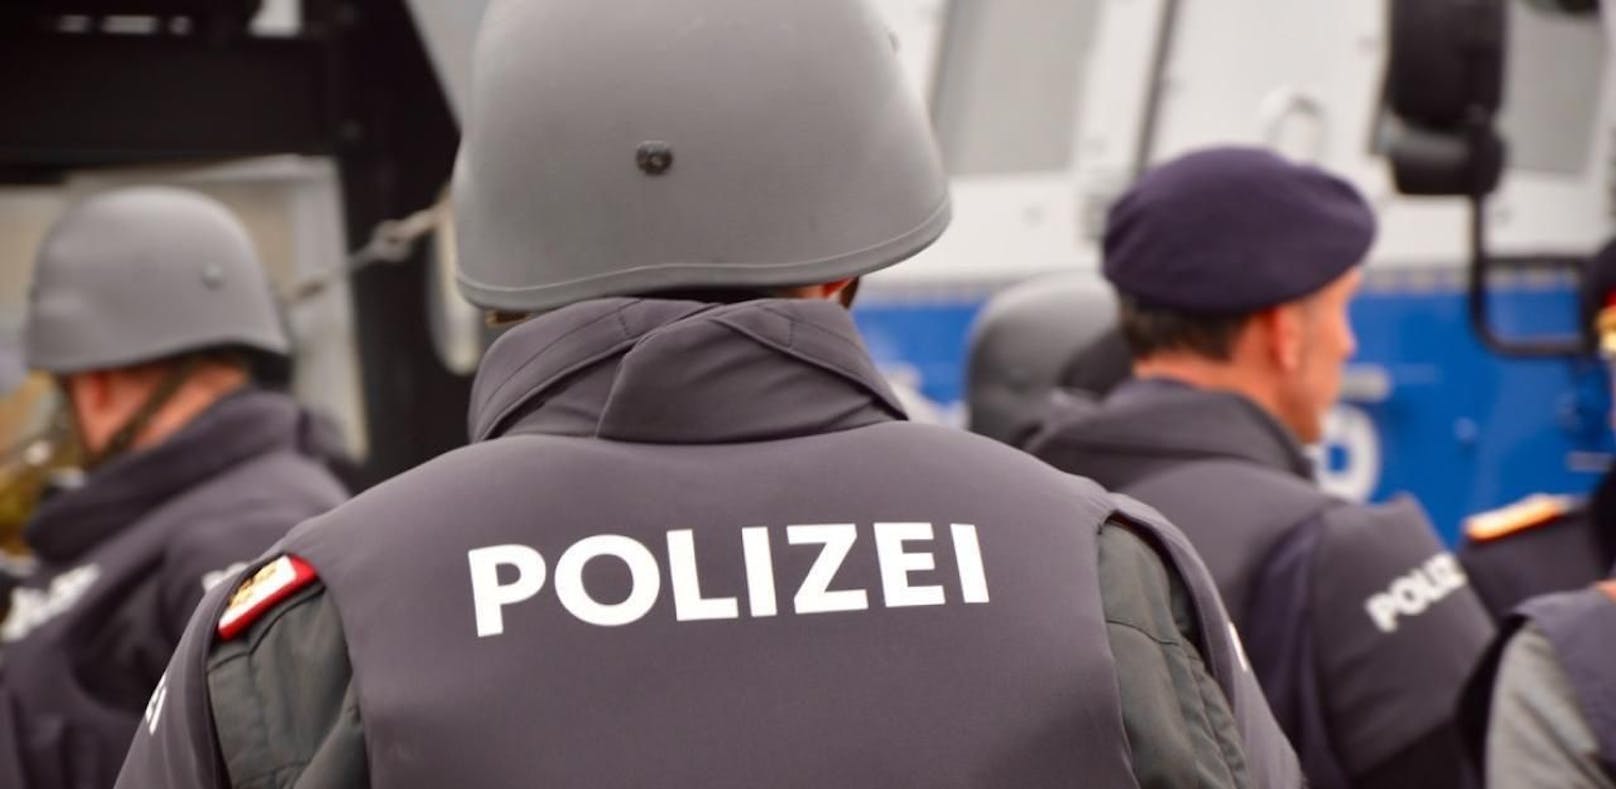 Die Cobra gilt als Elite-Polizeieinheit in Österreich.